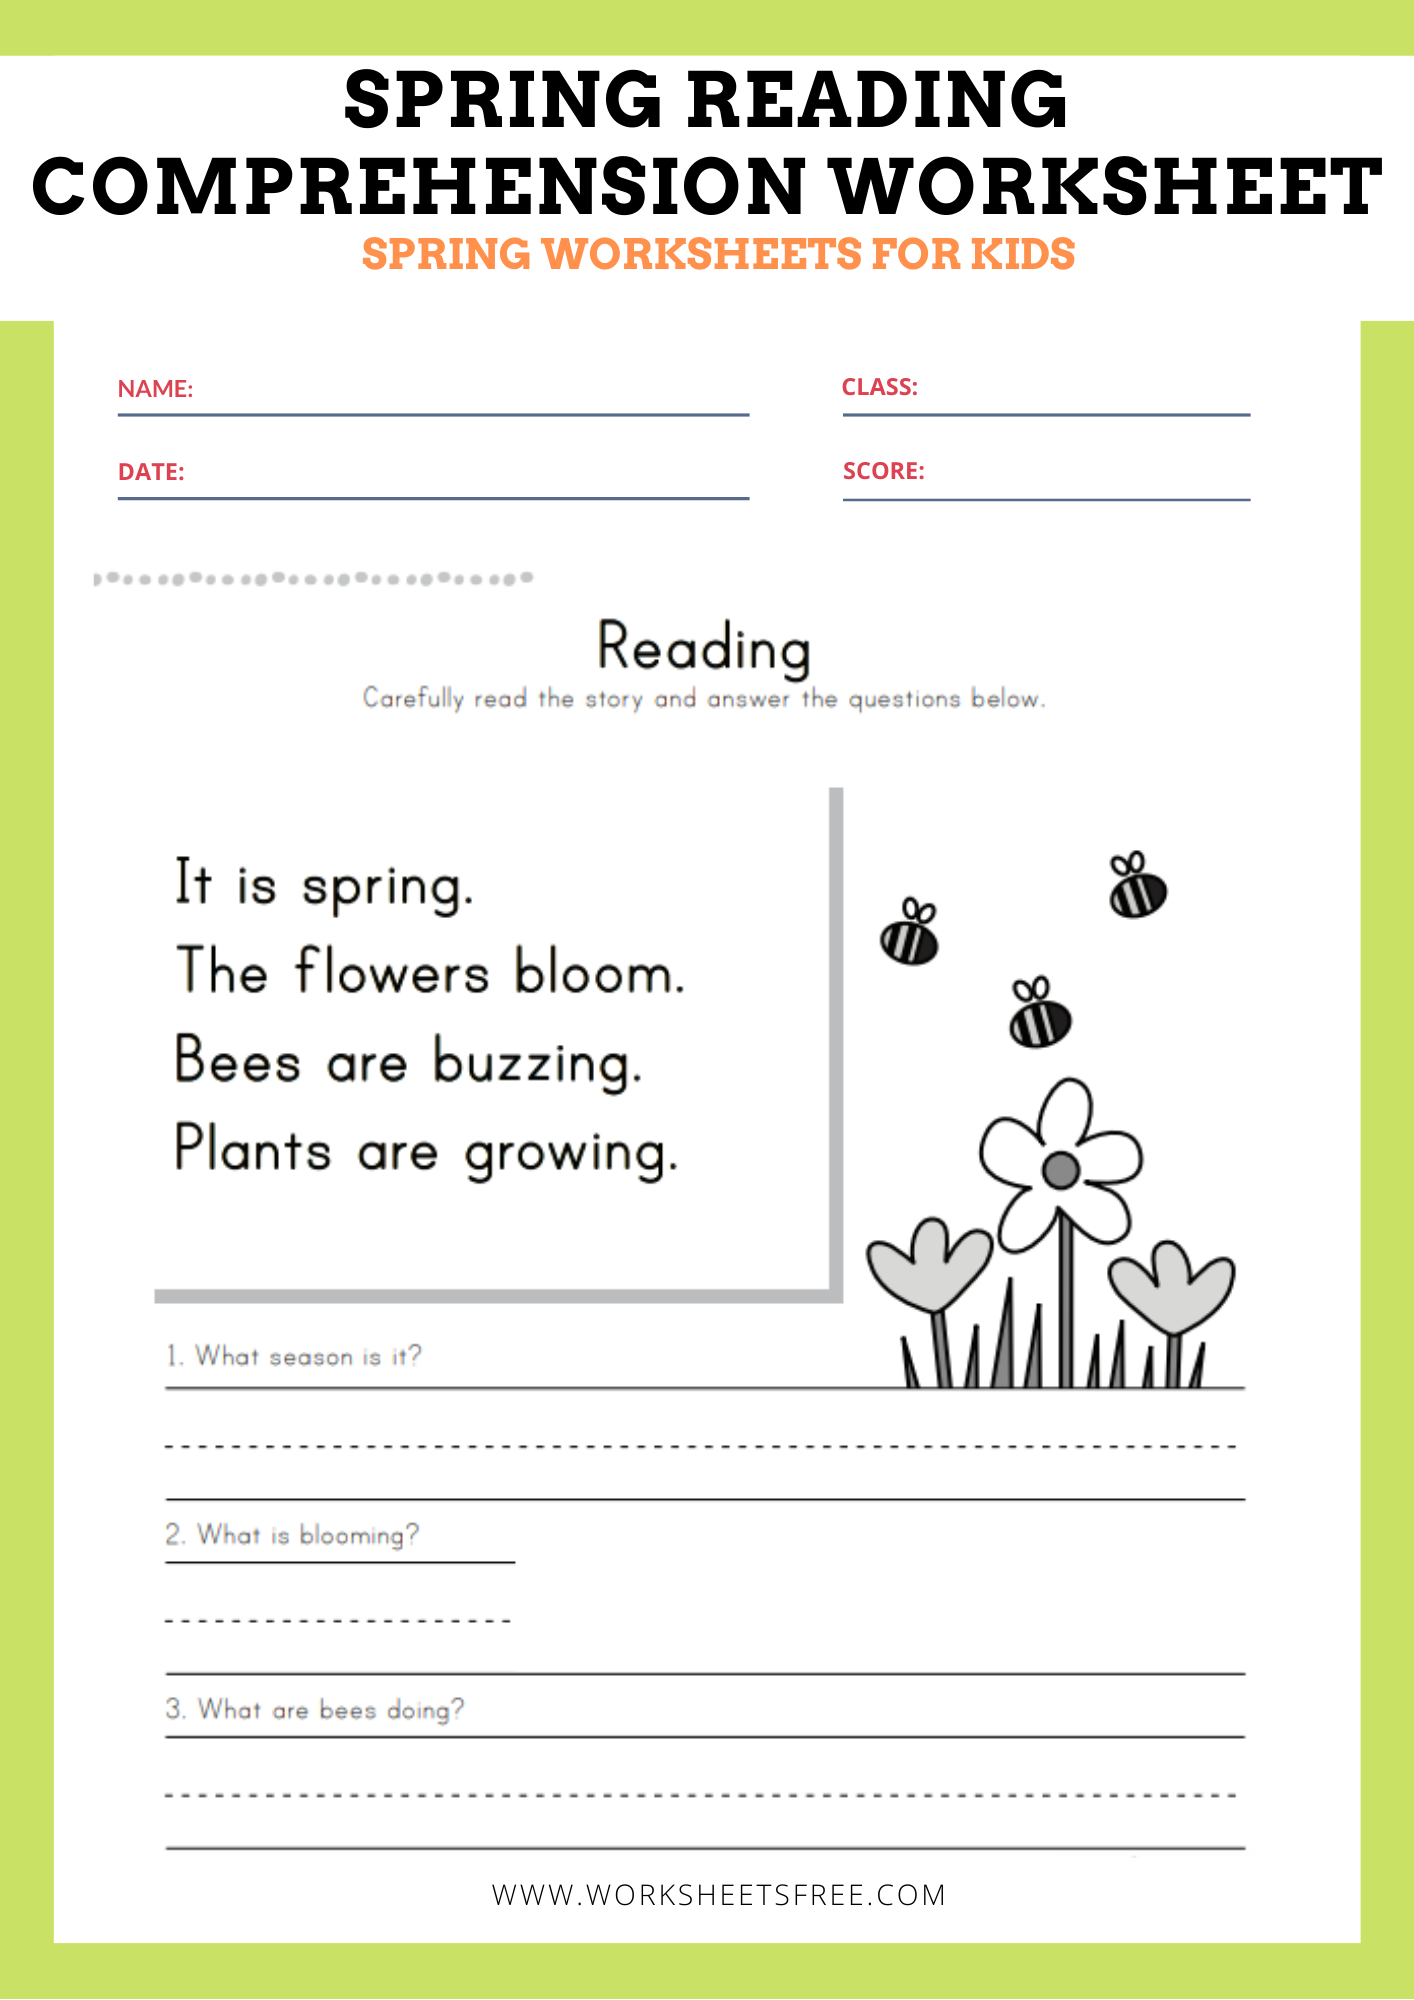 Spring Reading Comprehension Worksheet Worksheets Free